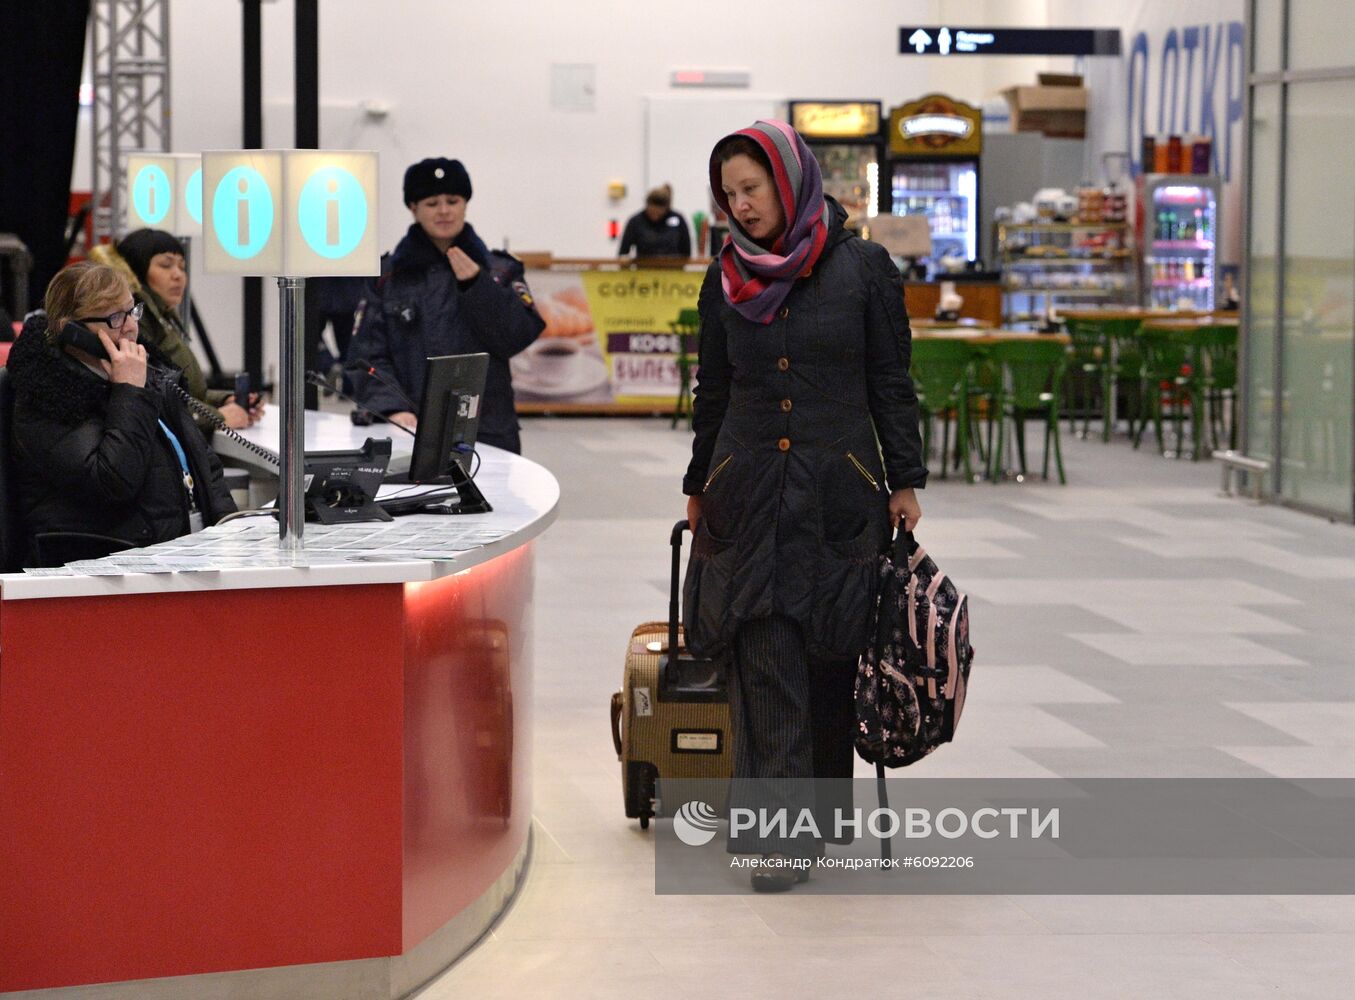 Новый терминал аэропорта Челябинск имени Игоря Курчатова